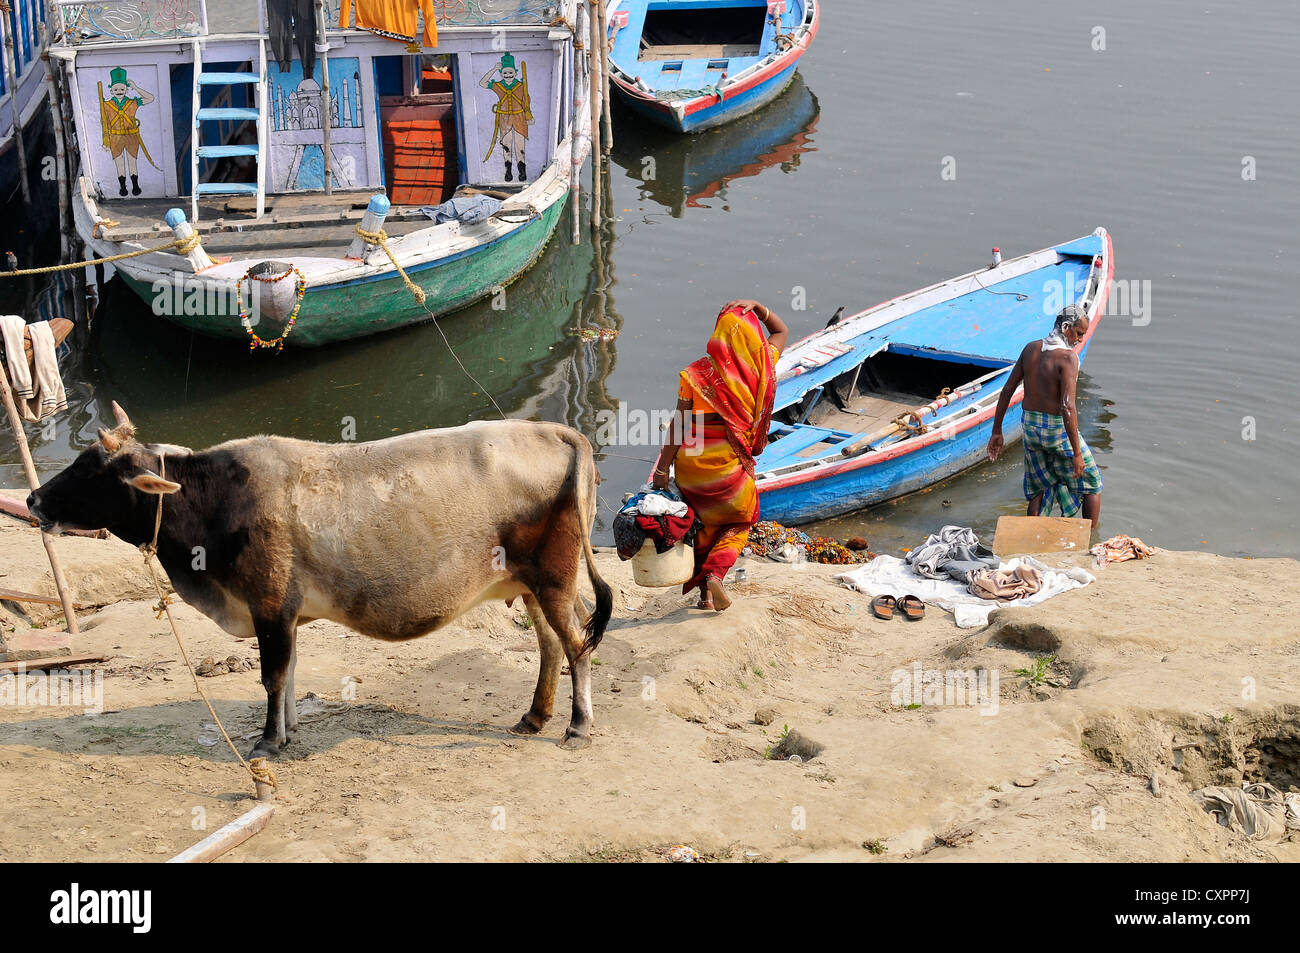 Asie Inde Uttar Pradesh Varanasi ou Benares personnes le long des rives du Gange Banque D'Images